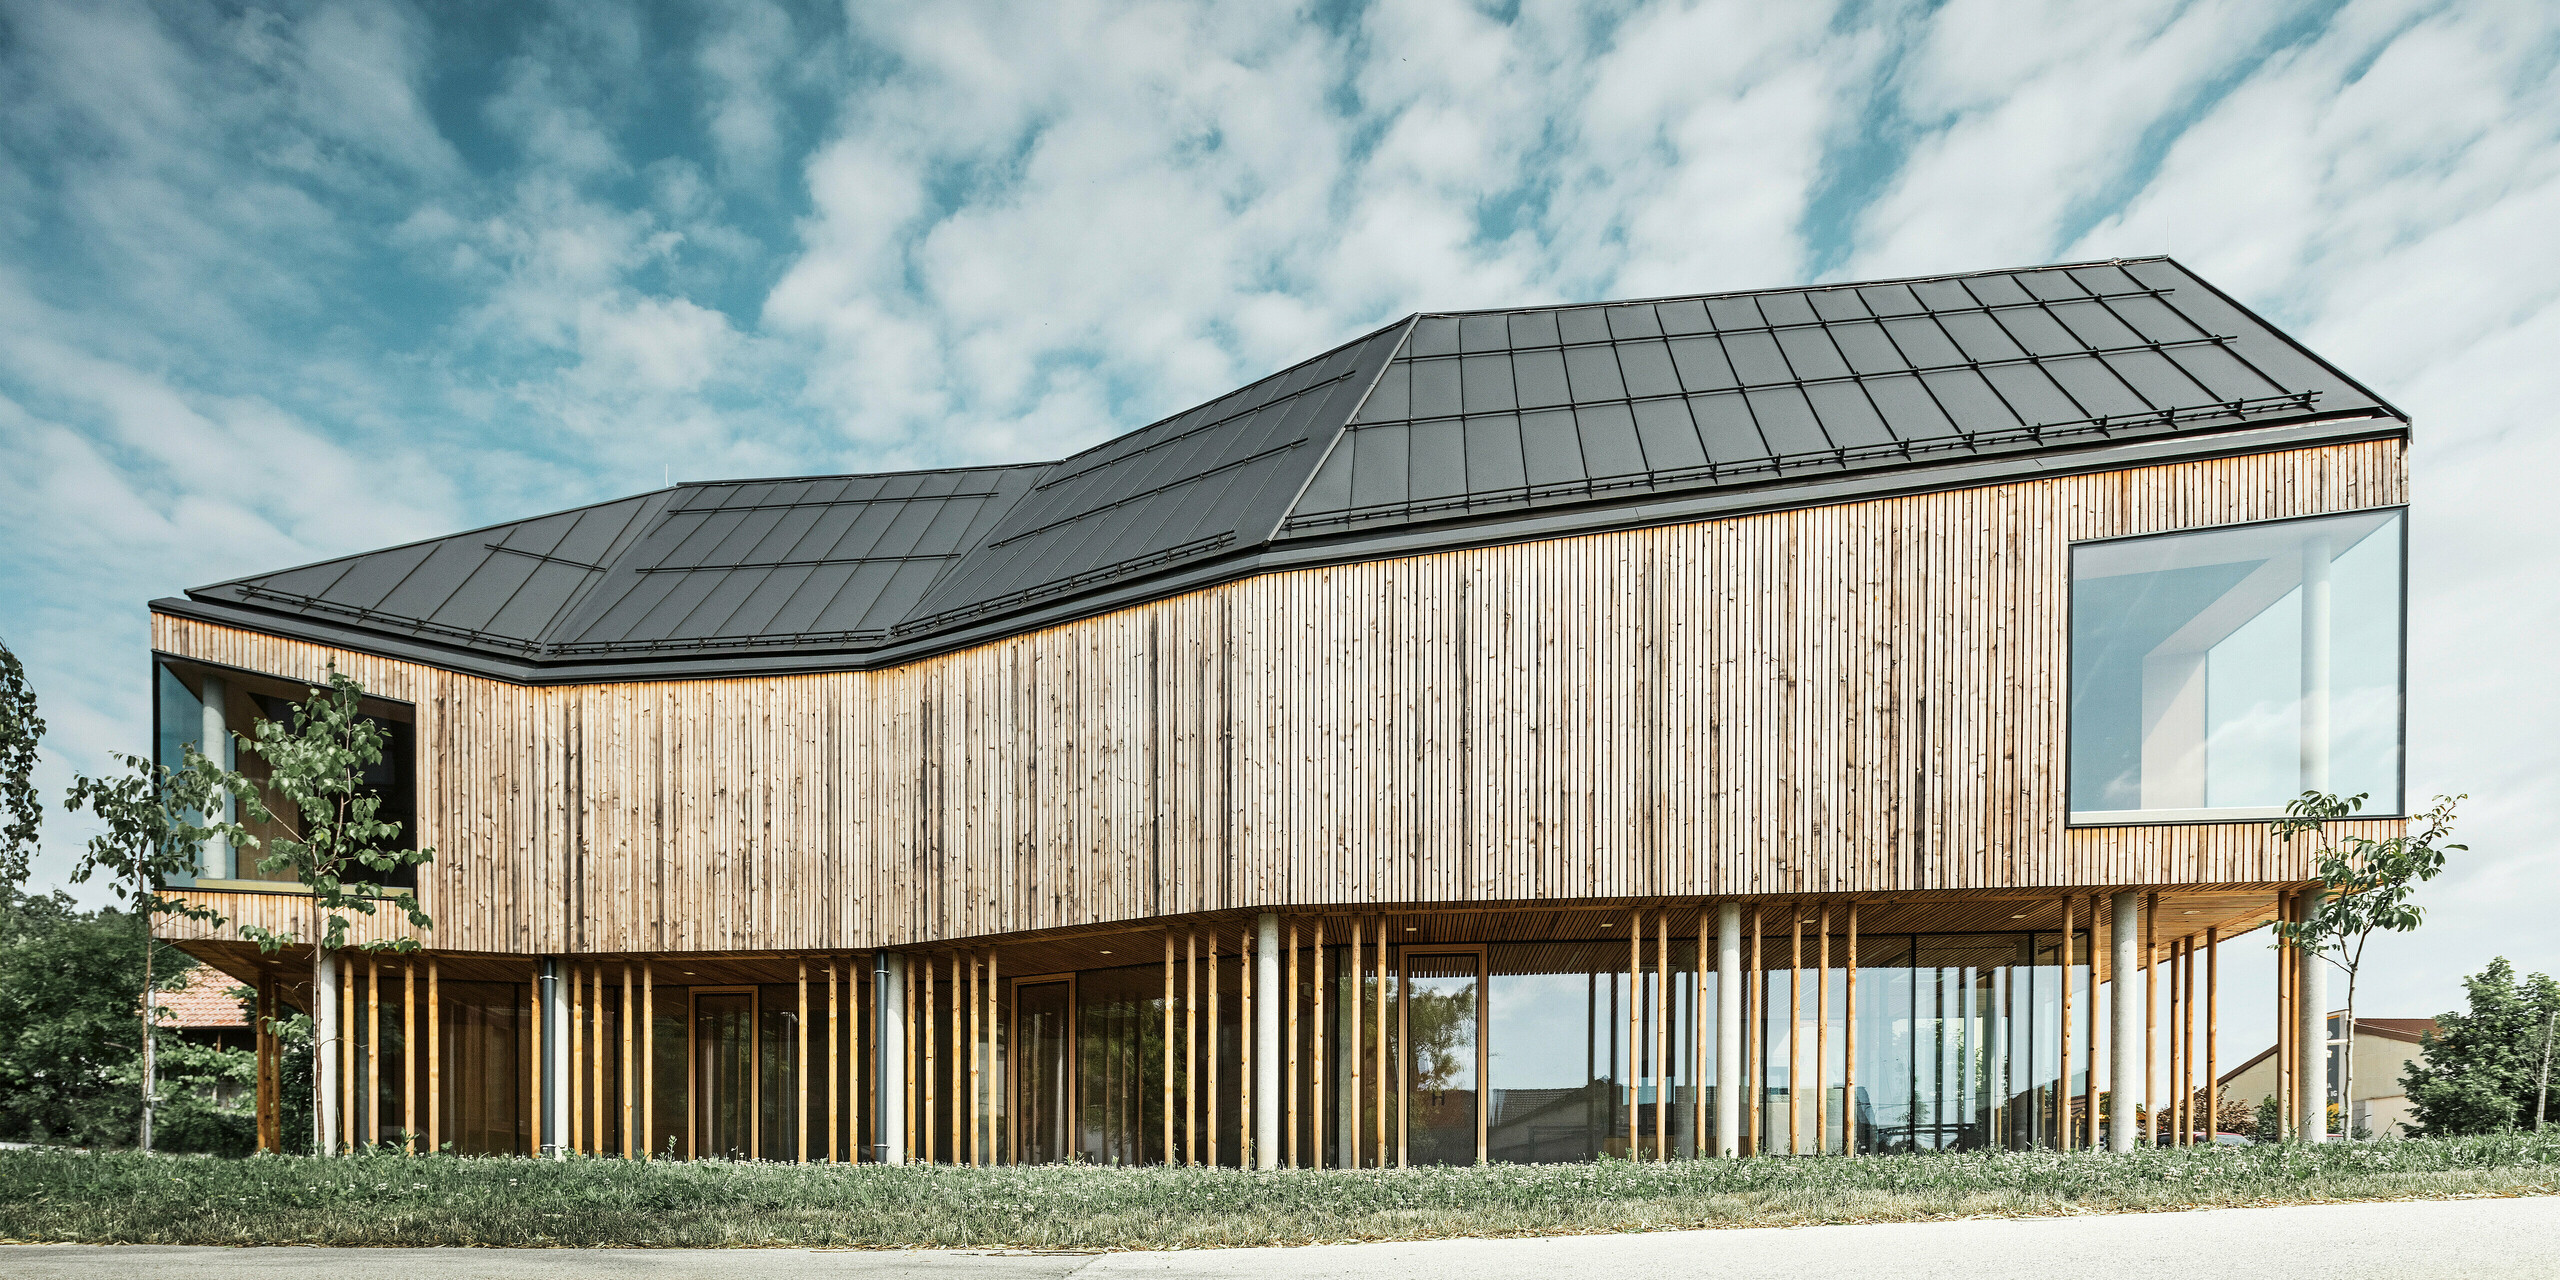 Boční pohled na ekologicky navržené návštěvnické centrum v Ig ve Slovinsku s tmavě šedou střechou PREFALZ, která zdůrazňuje čisté linie budovy a moderní architektonický jazyk. Vzájemné působení přírodního dřevěného obkladu a rozsáhlého prosklení, které odráží modrou oblohu a mraky, demonstruje spojení funkčnosti a estetiky. Design dokonale zapadá do venkovského prostředí a odráží inovativní stavební postupy.